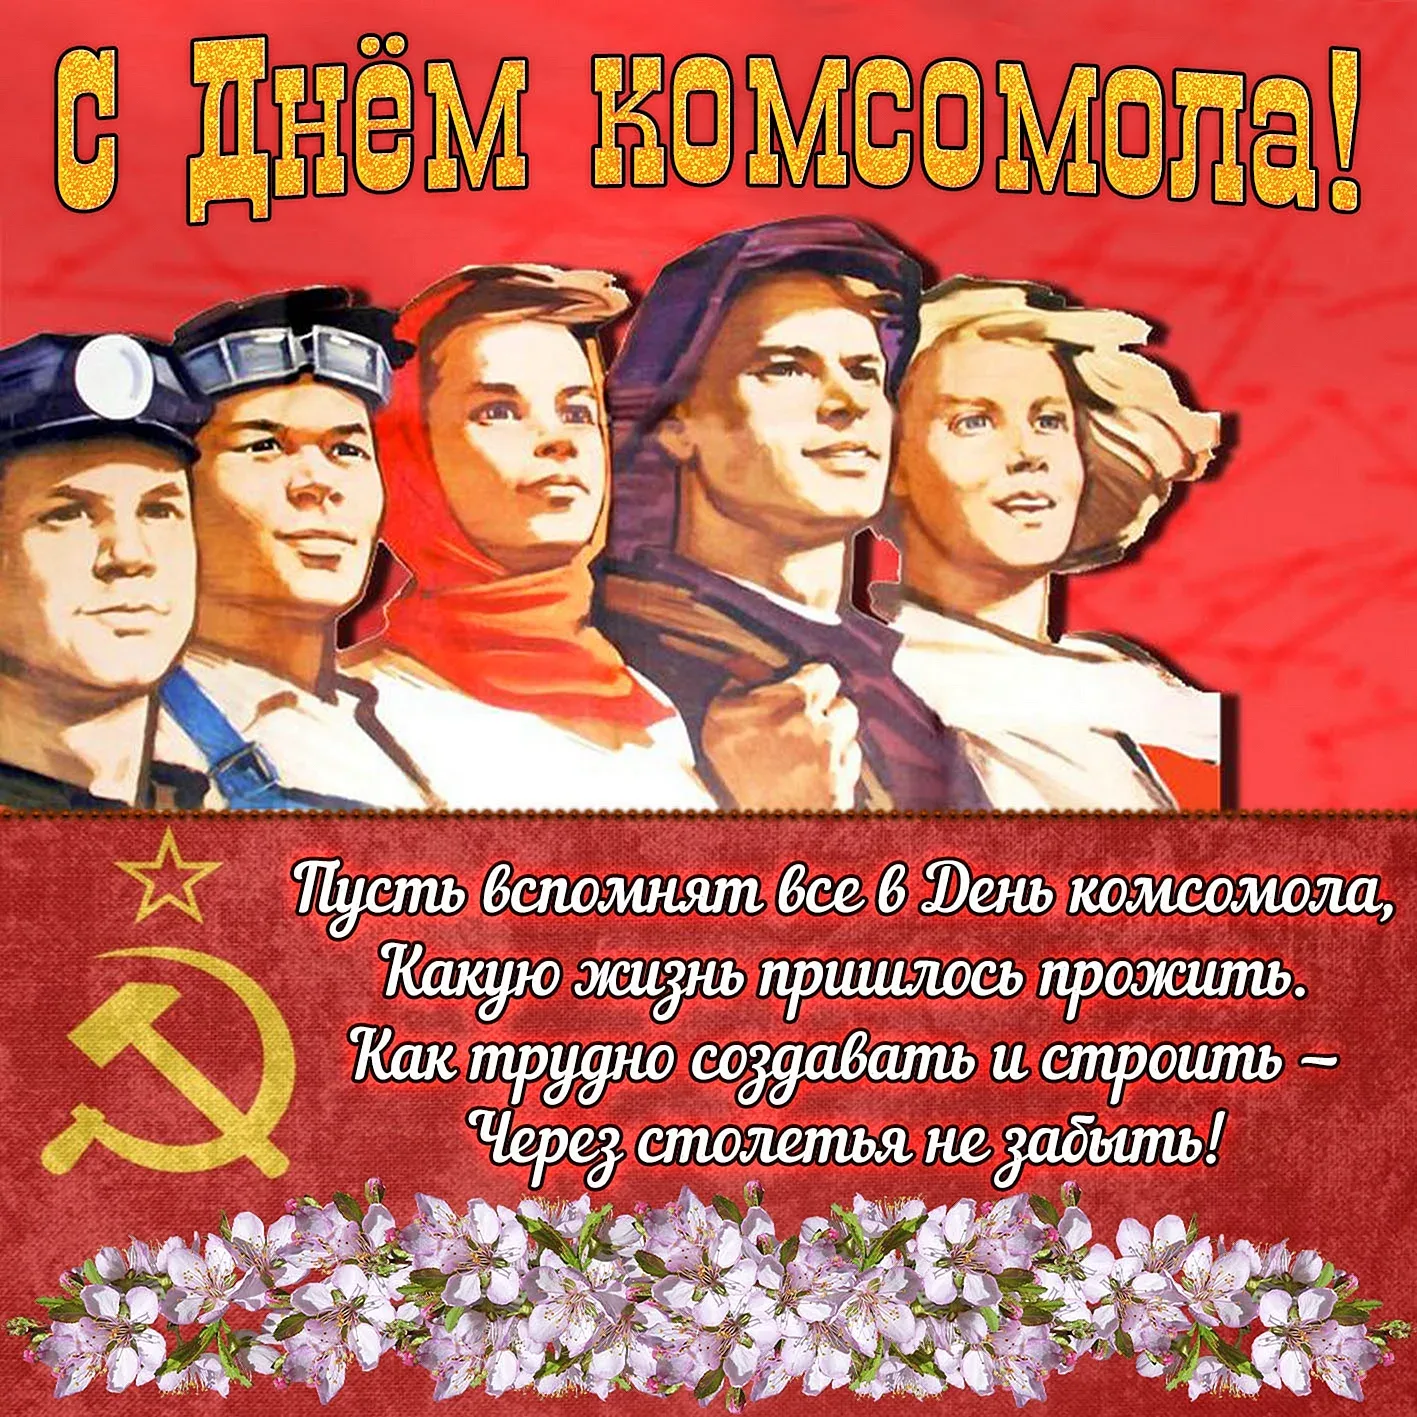 Фото Comsomol Day #1